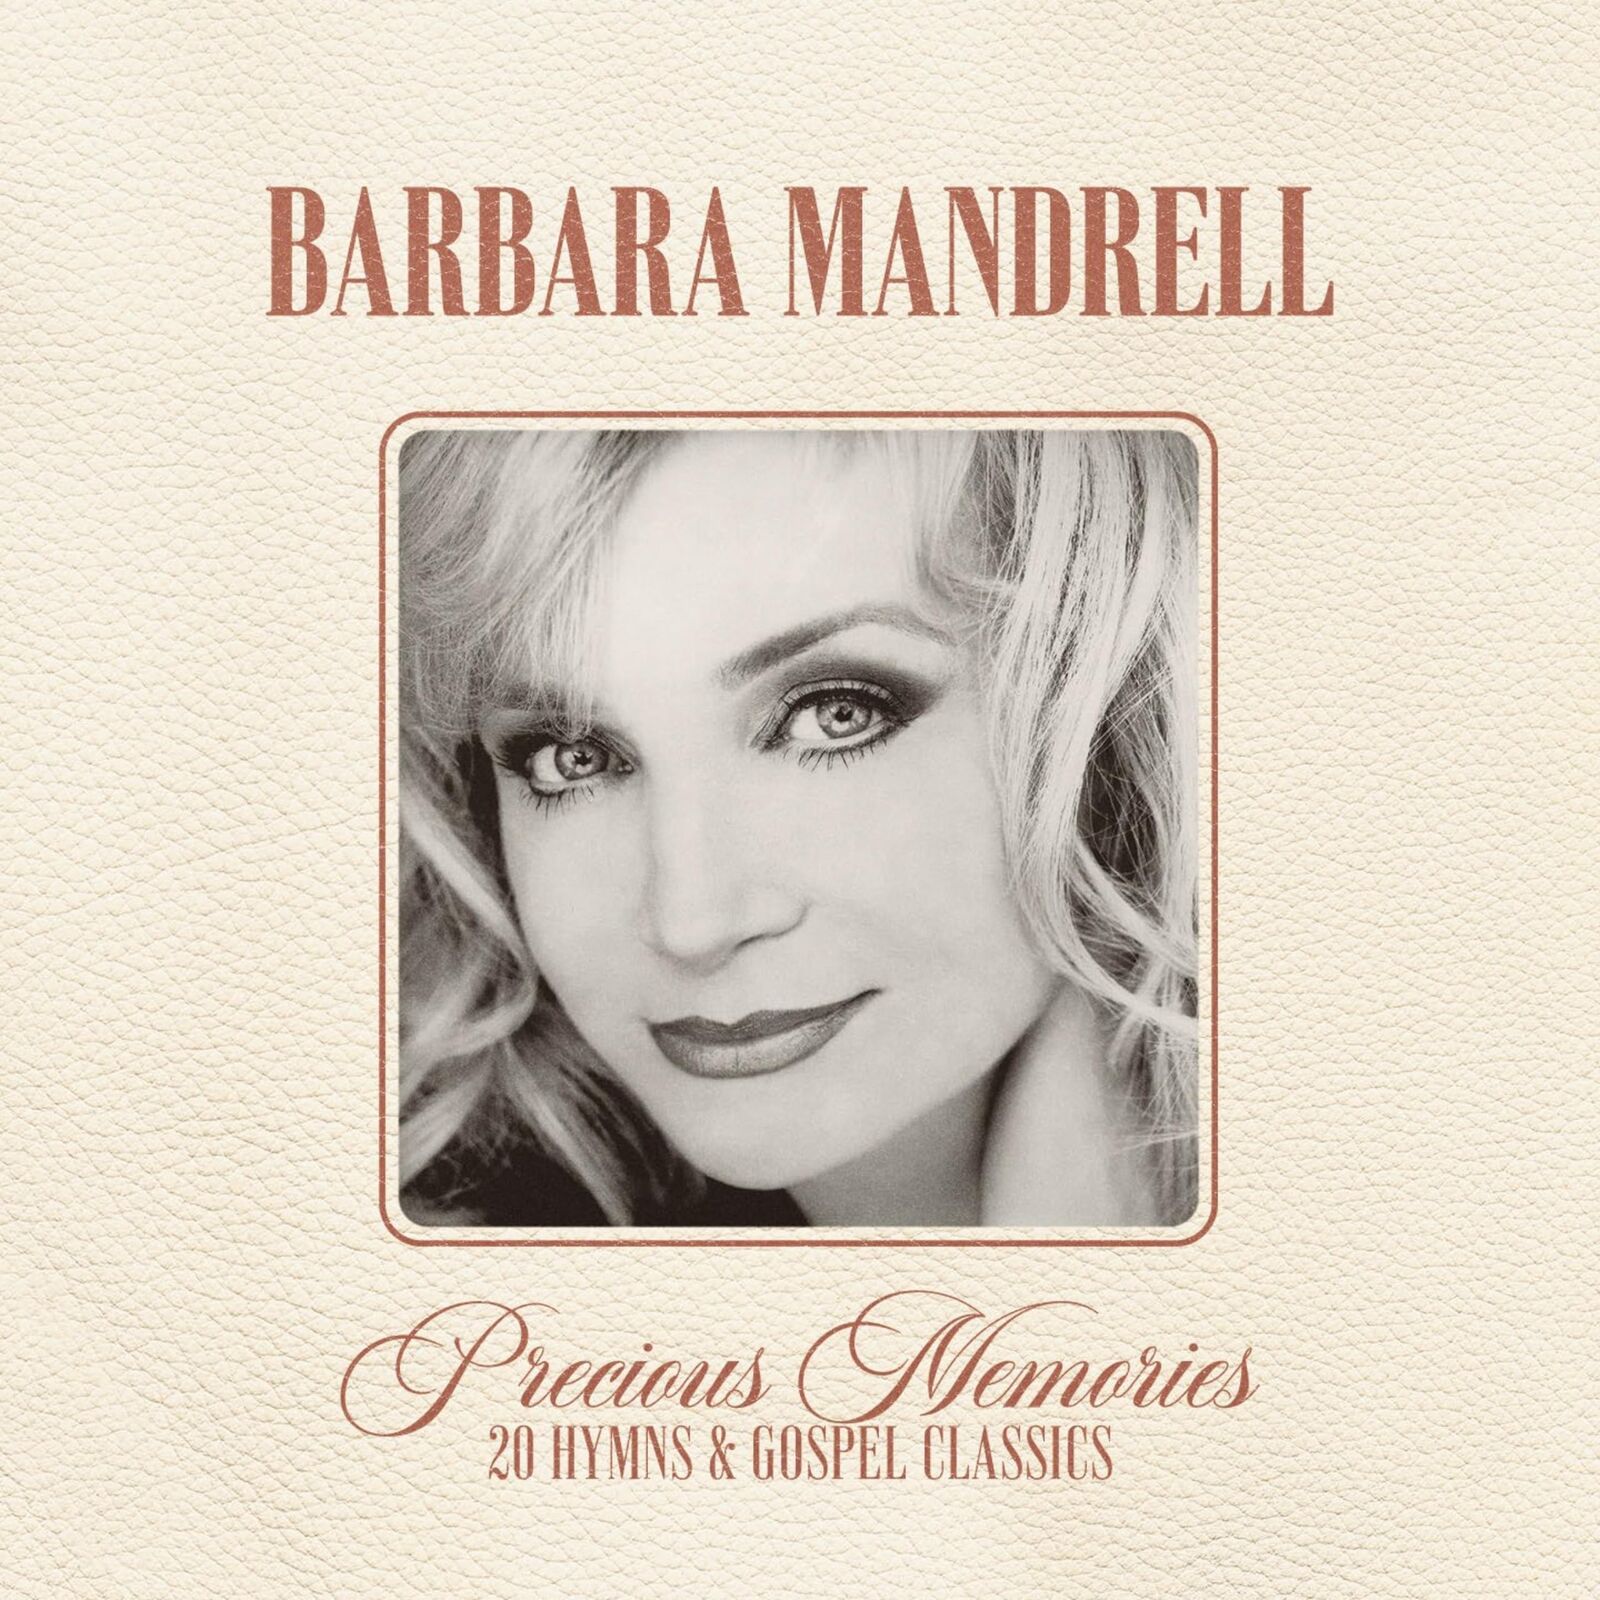 Barbara Mandrell Precious Memories: 20 Hymns & Gospel Classics (CD)